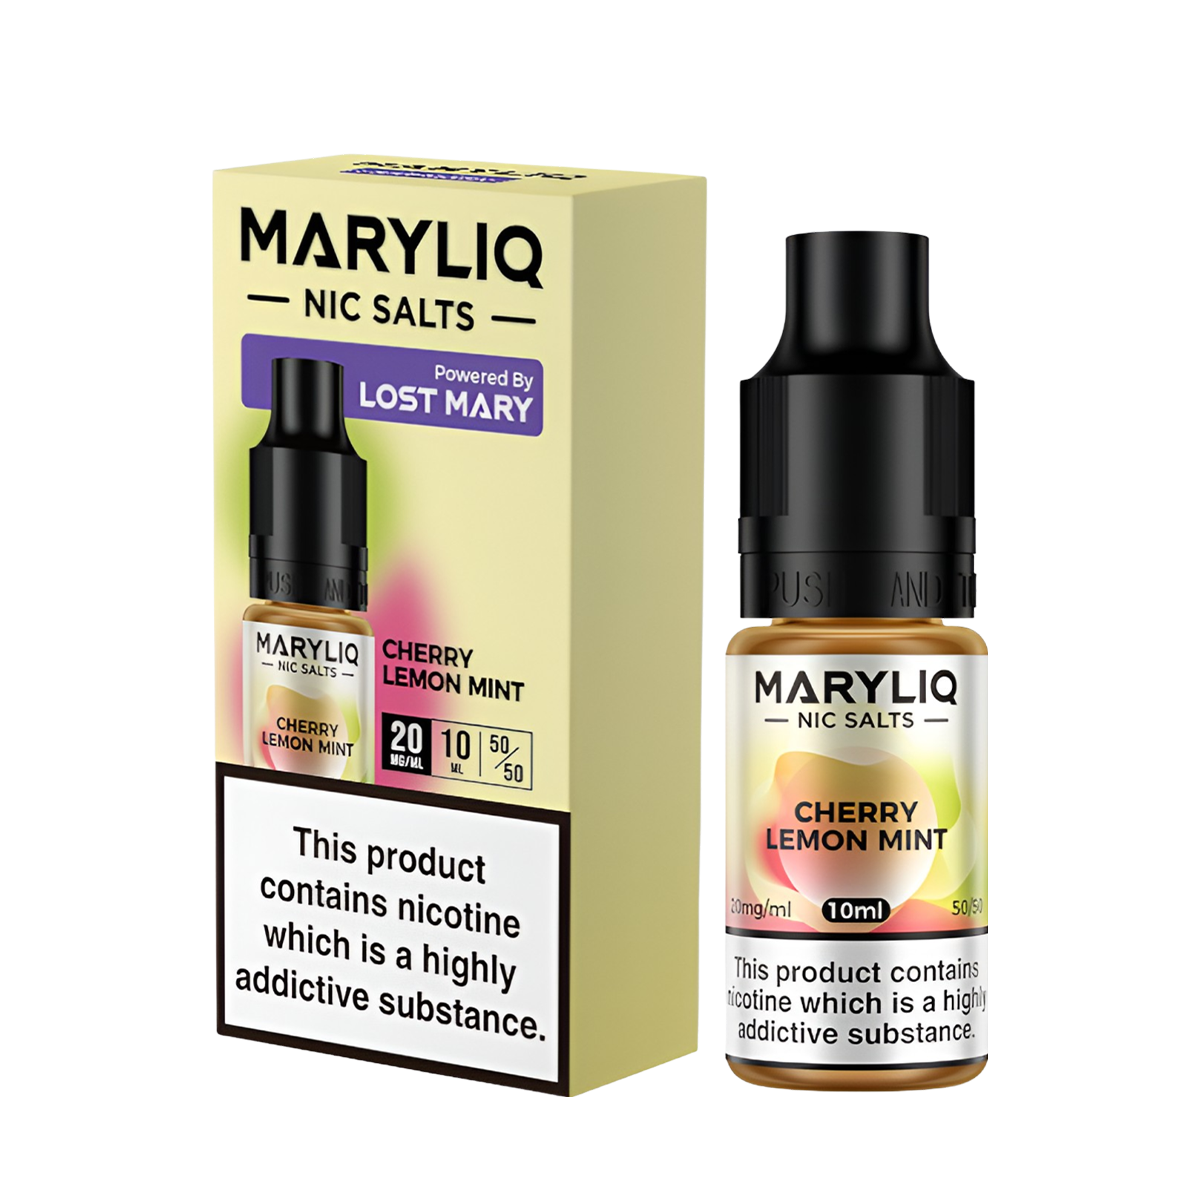 Lost Mary Maryliq Salt Nicotine Vape Juice 20 Mg 10 Ml Cherry Lemon Mint